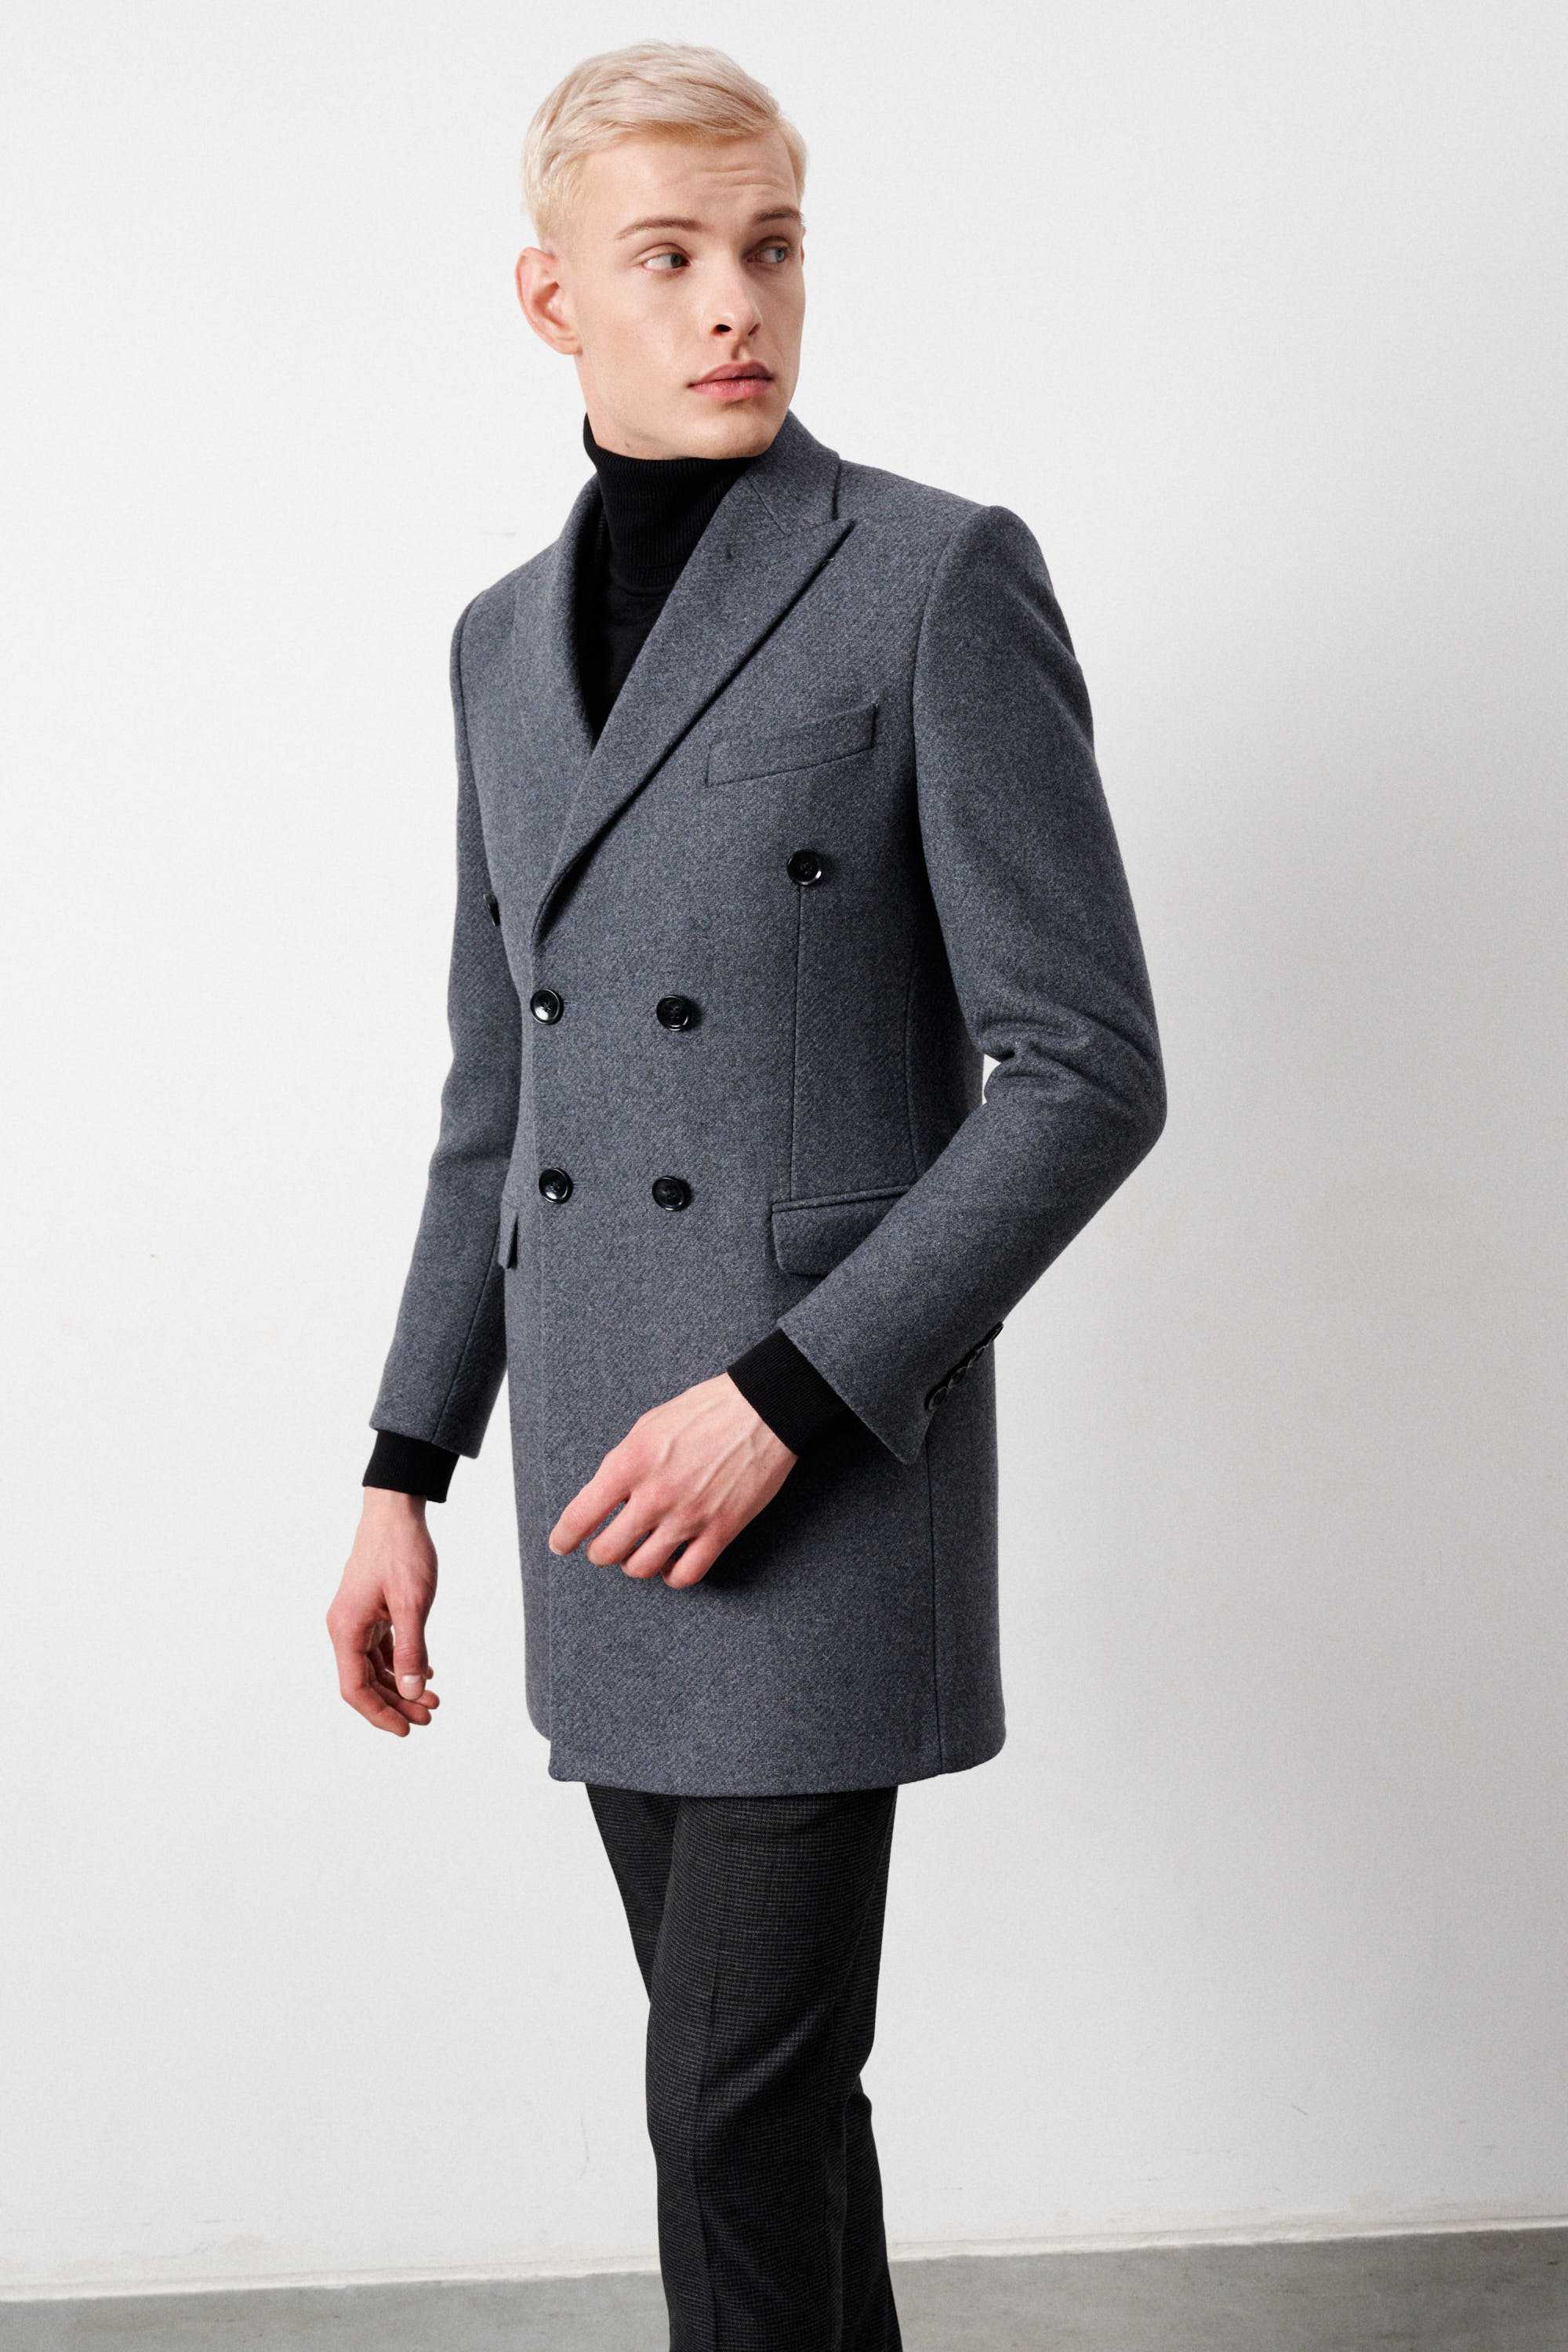 Пальто двубортное мужское, демисезонное, серое меланж, в диагональную фактуру